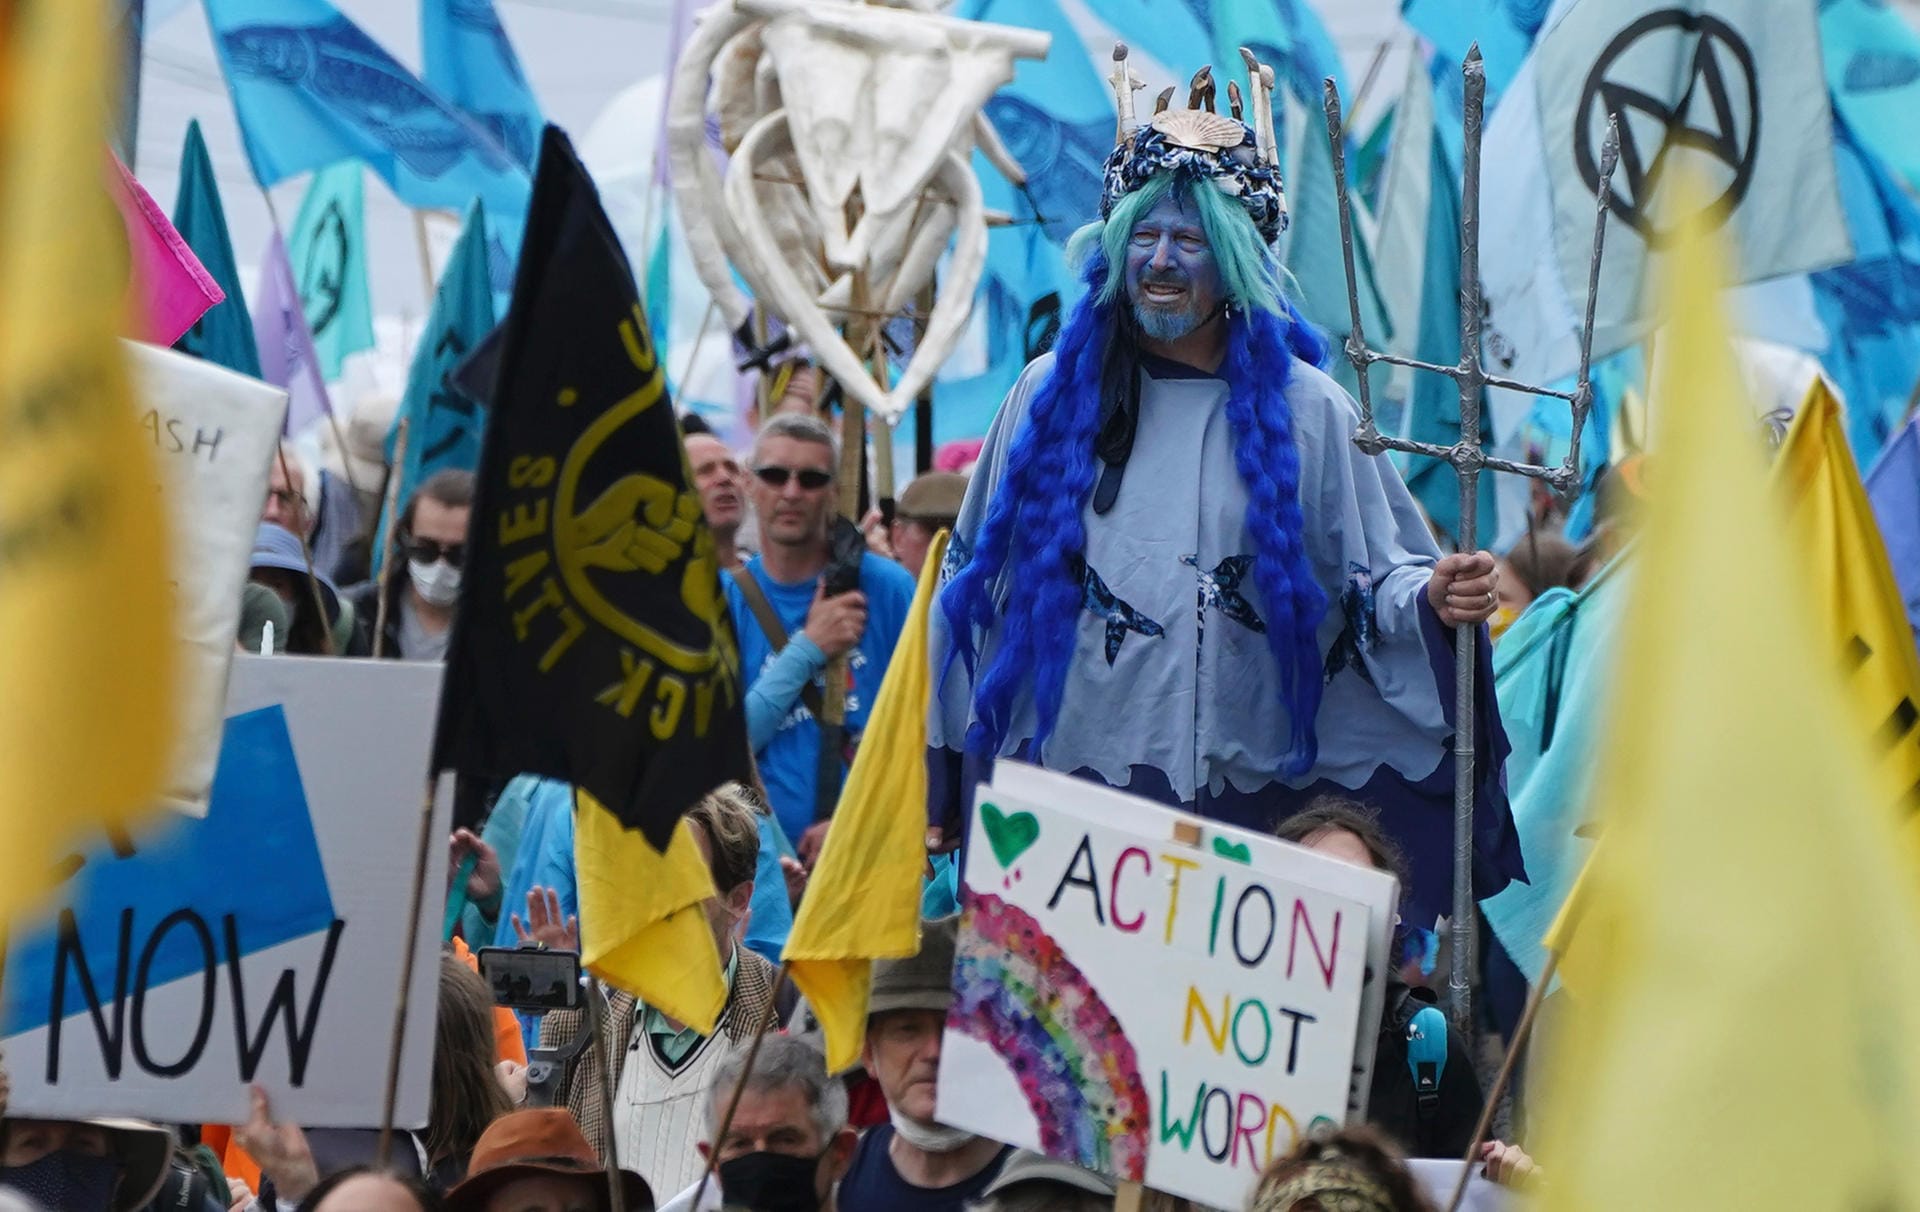 Seit Freitag demonstrieren rund um den Veranstaltungsort des G7-Gipfels in Cornwall Hunderte für mehr Klimaschutz. Die Proteste sind deutlich kleiner als bei frühen Gipfeltreffen der sieben einst größten Industrienationen der Welt – Carbis Bay ist fünf Zugstunden von London entfernt, noch immer ist Pandemie. Aber die Botschaft der Teilnehmerinnen und Teilnehmer ist klar: "Action Not Words".